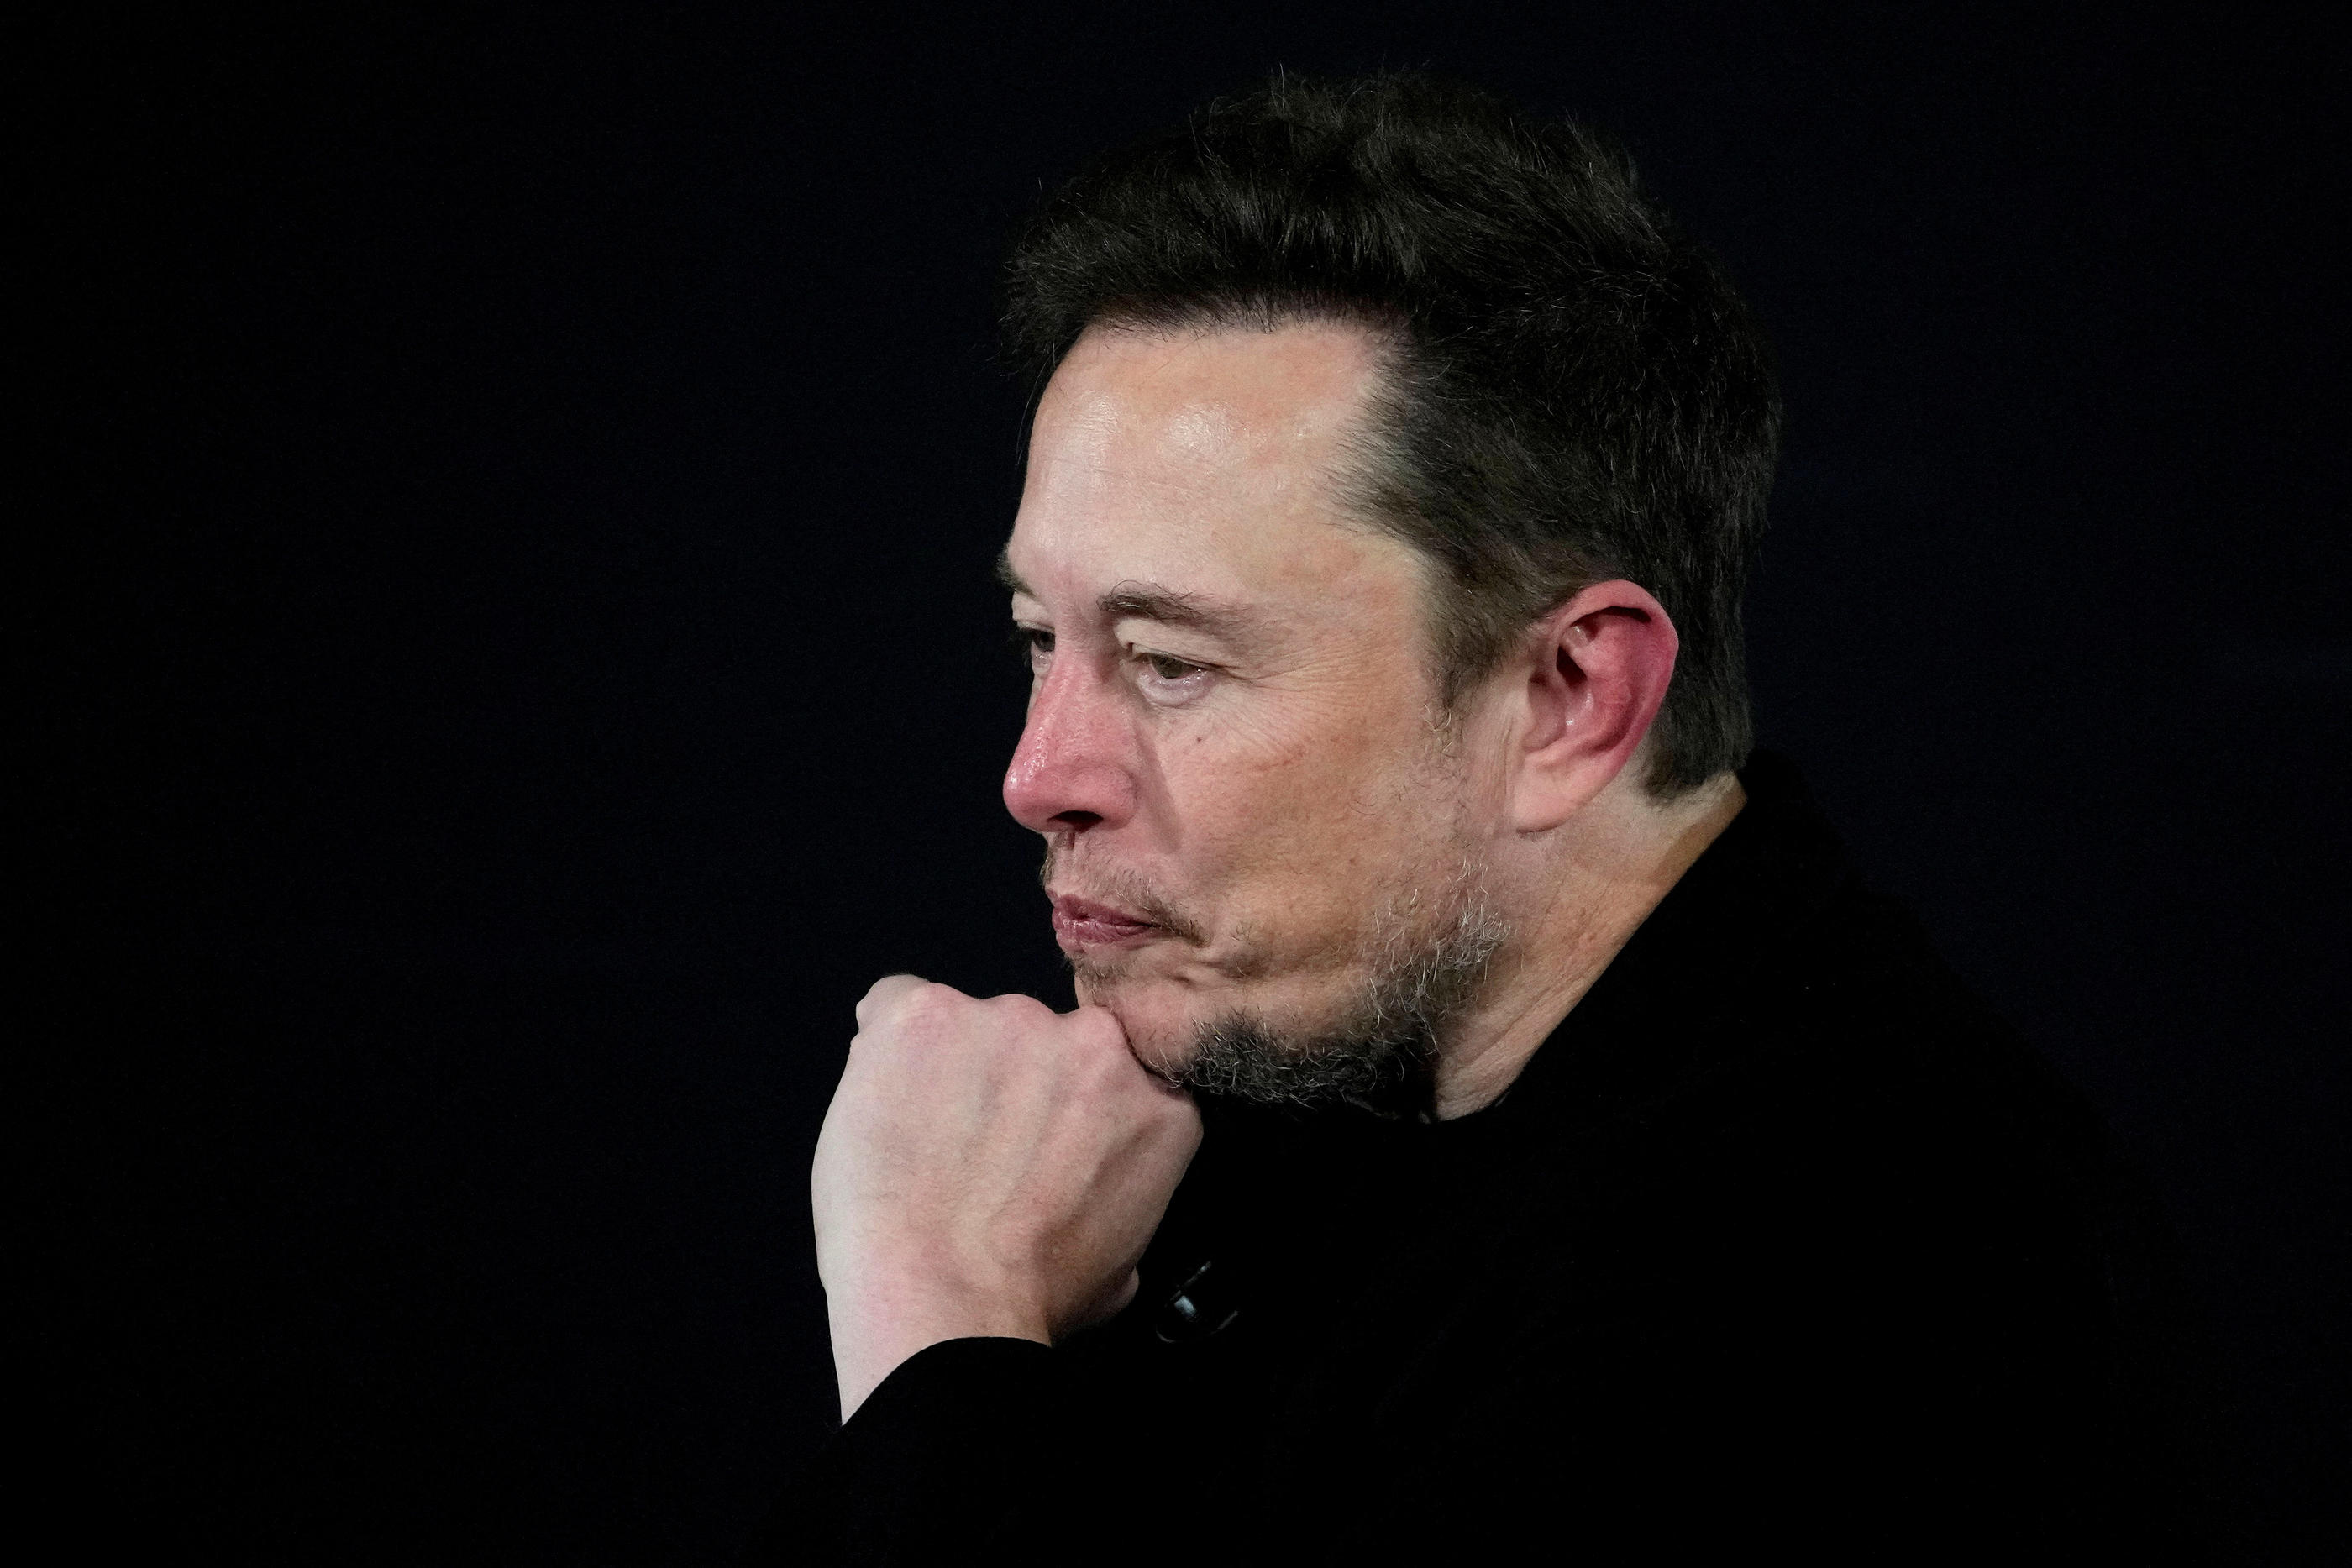 Elon Musk s’est récemment attiré les foudres de la Maison-Blanche après avoir répondu favorablement à une publication jugée antisémite. Reuters/Kirsty Wigglesworth